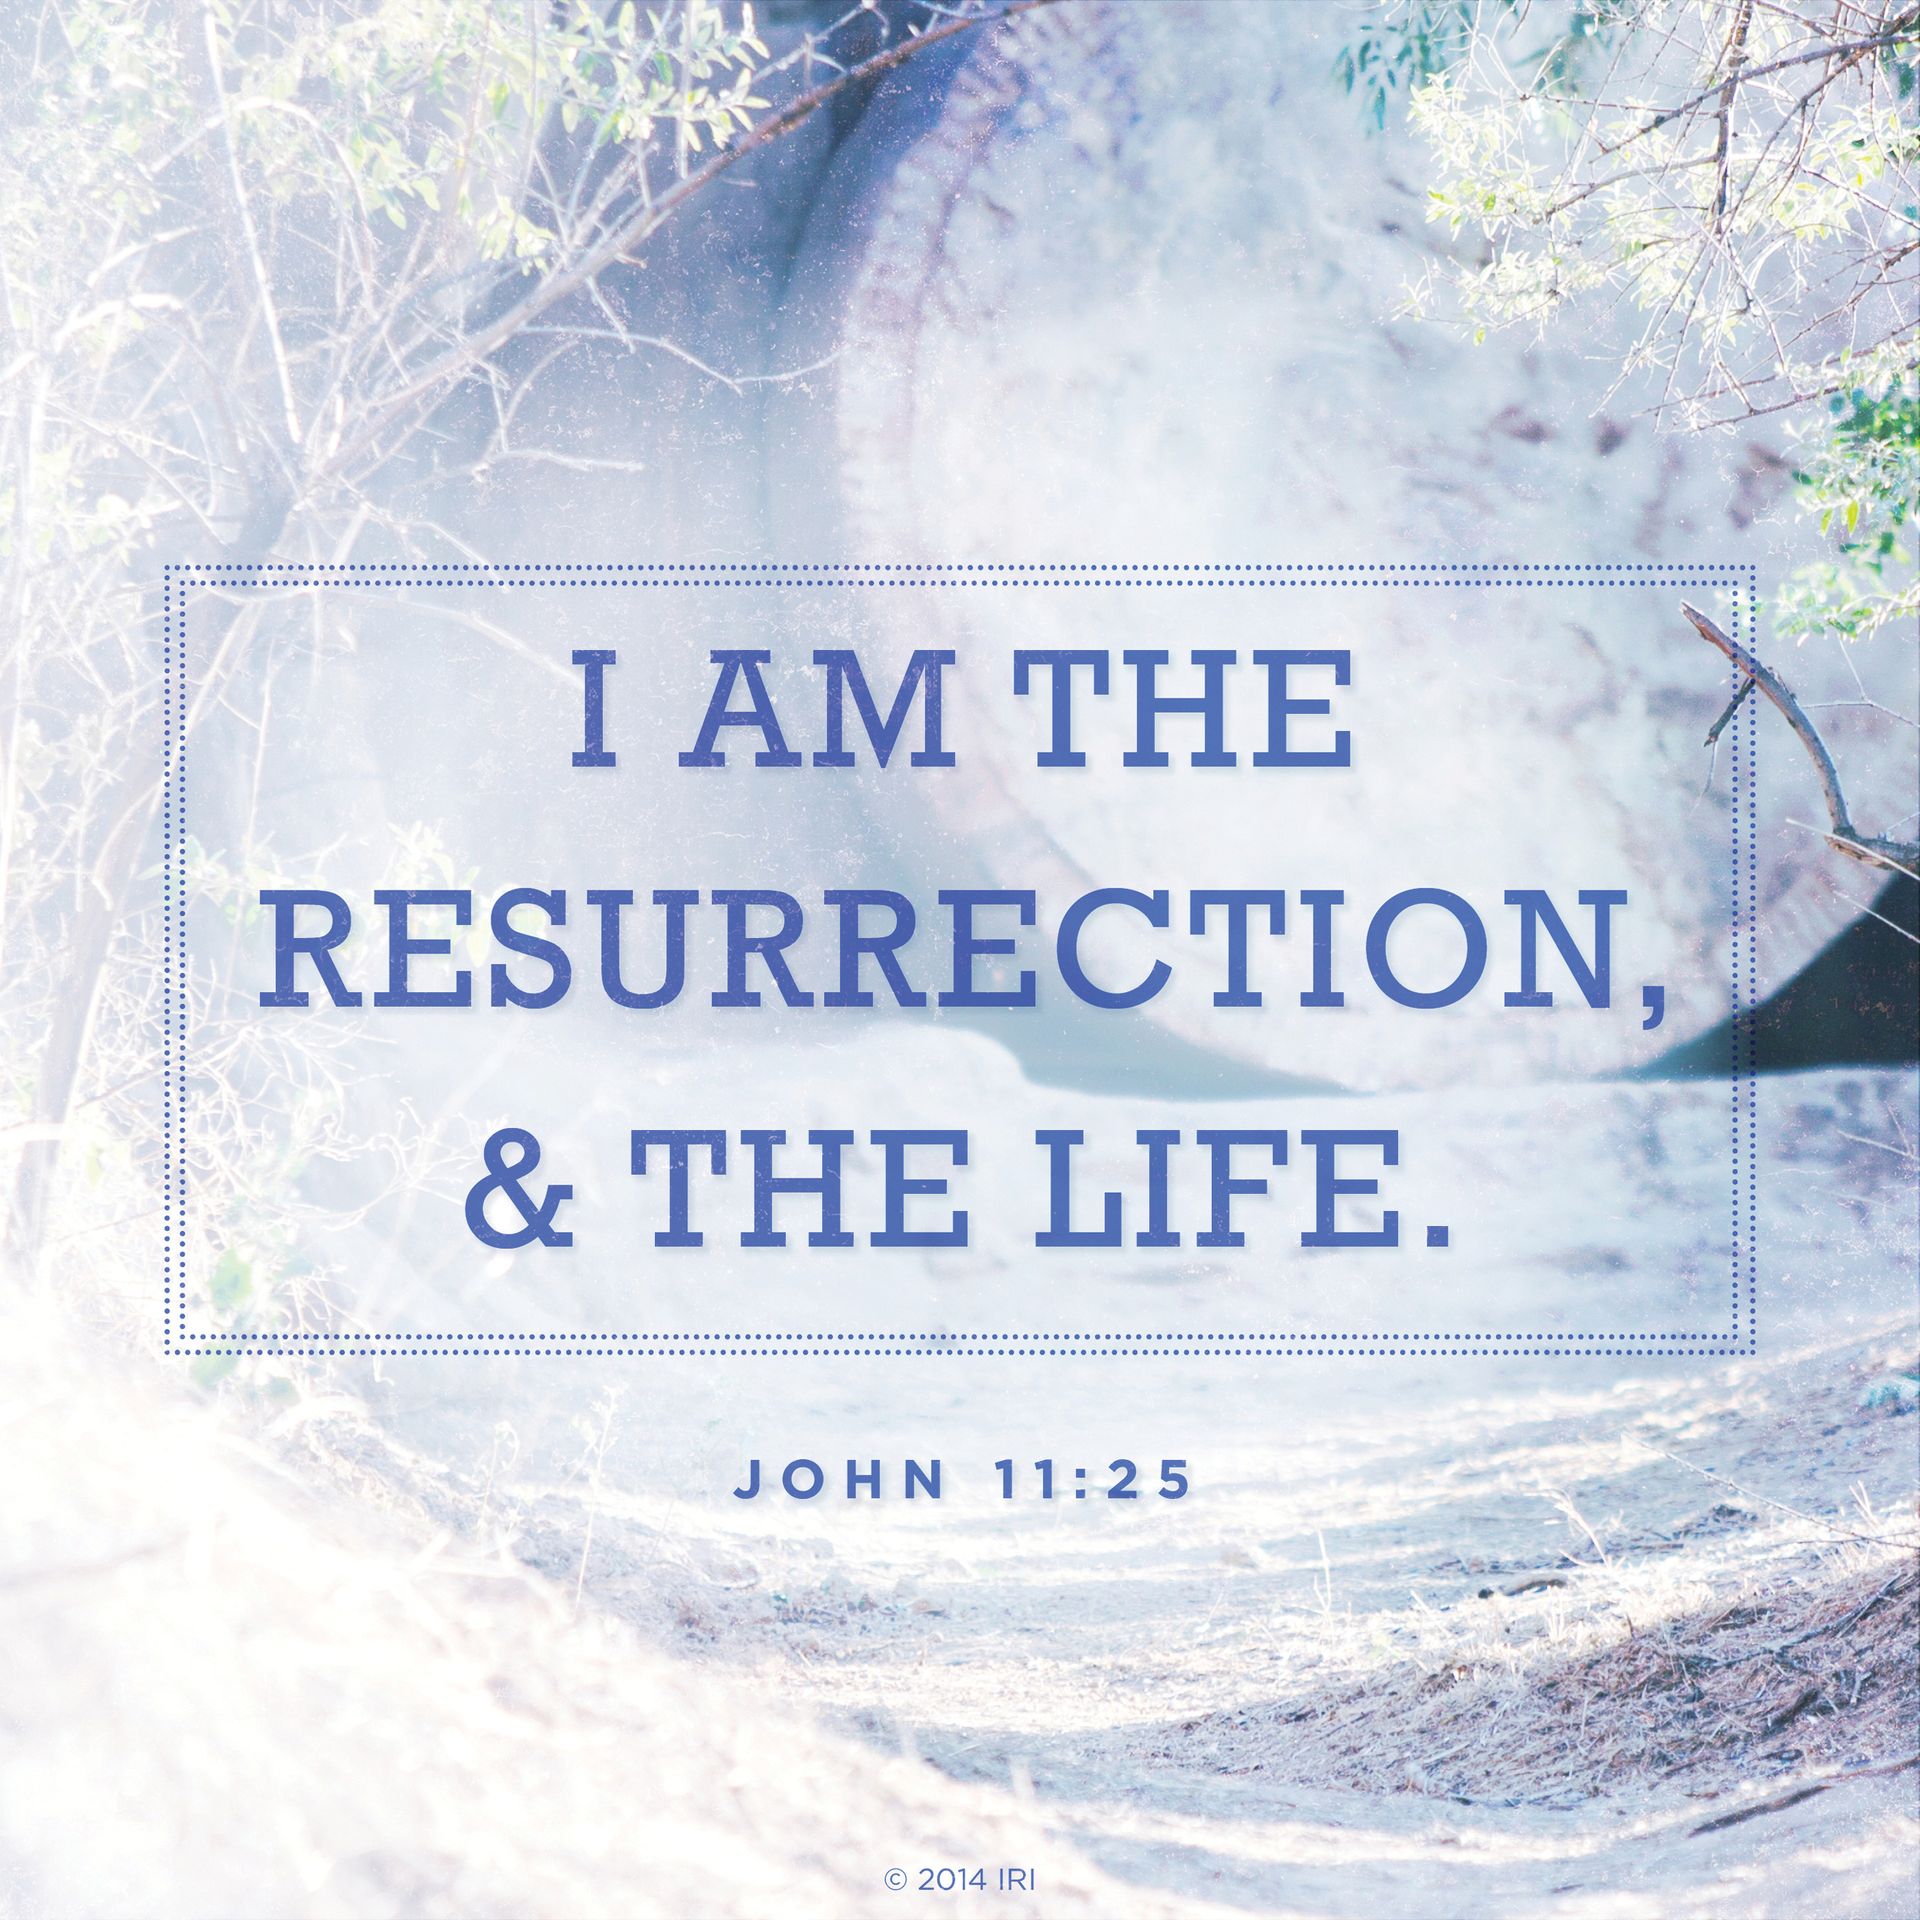 “I am the resurrection, and the life.”—John 11:25